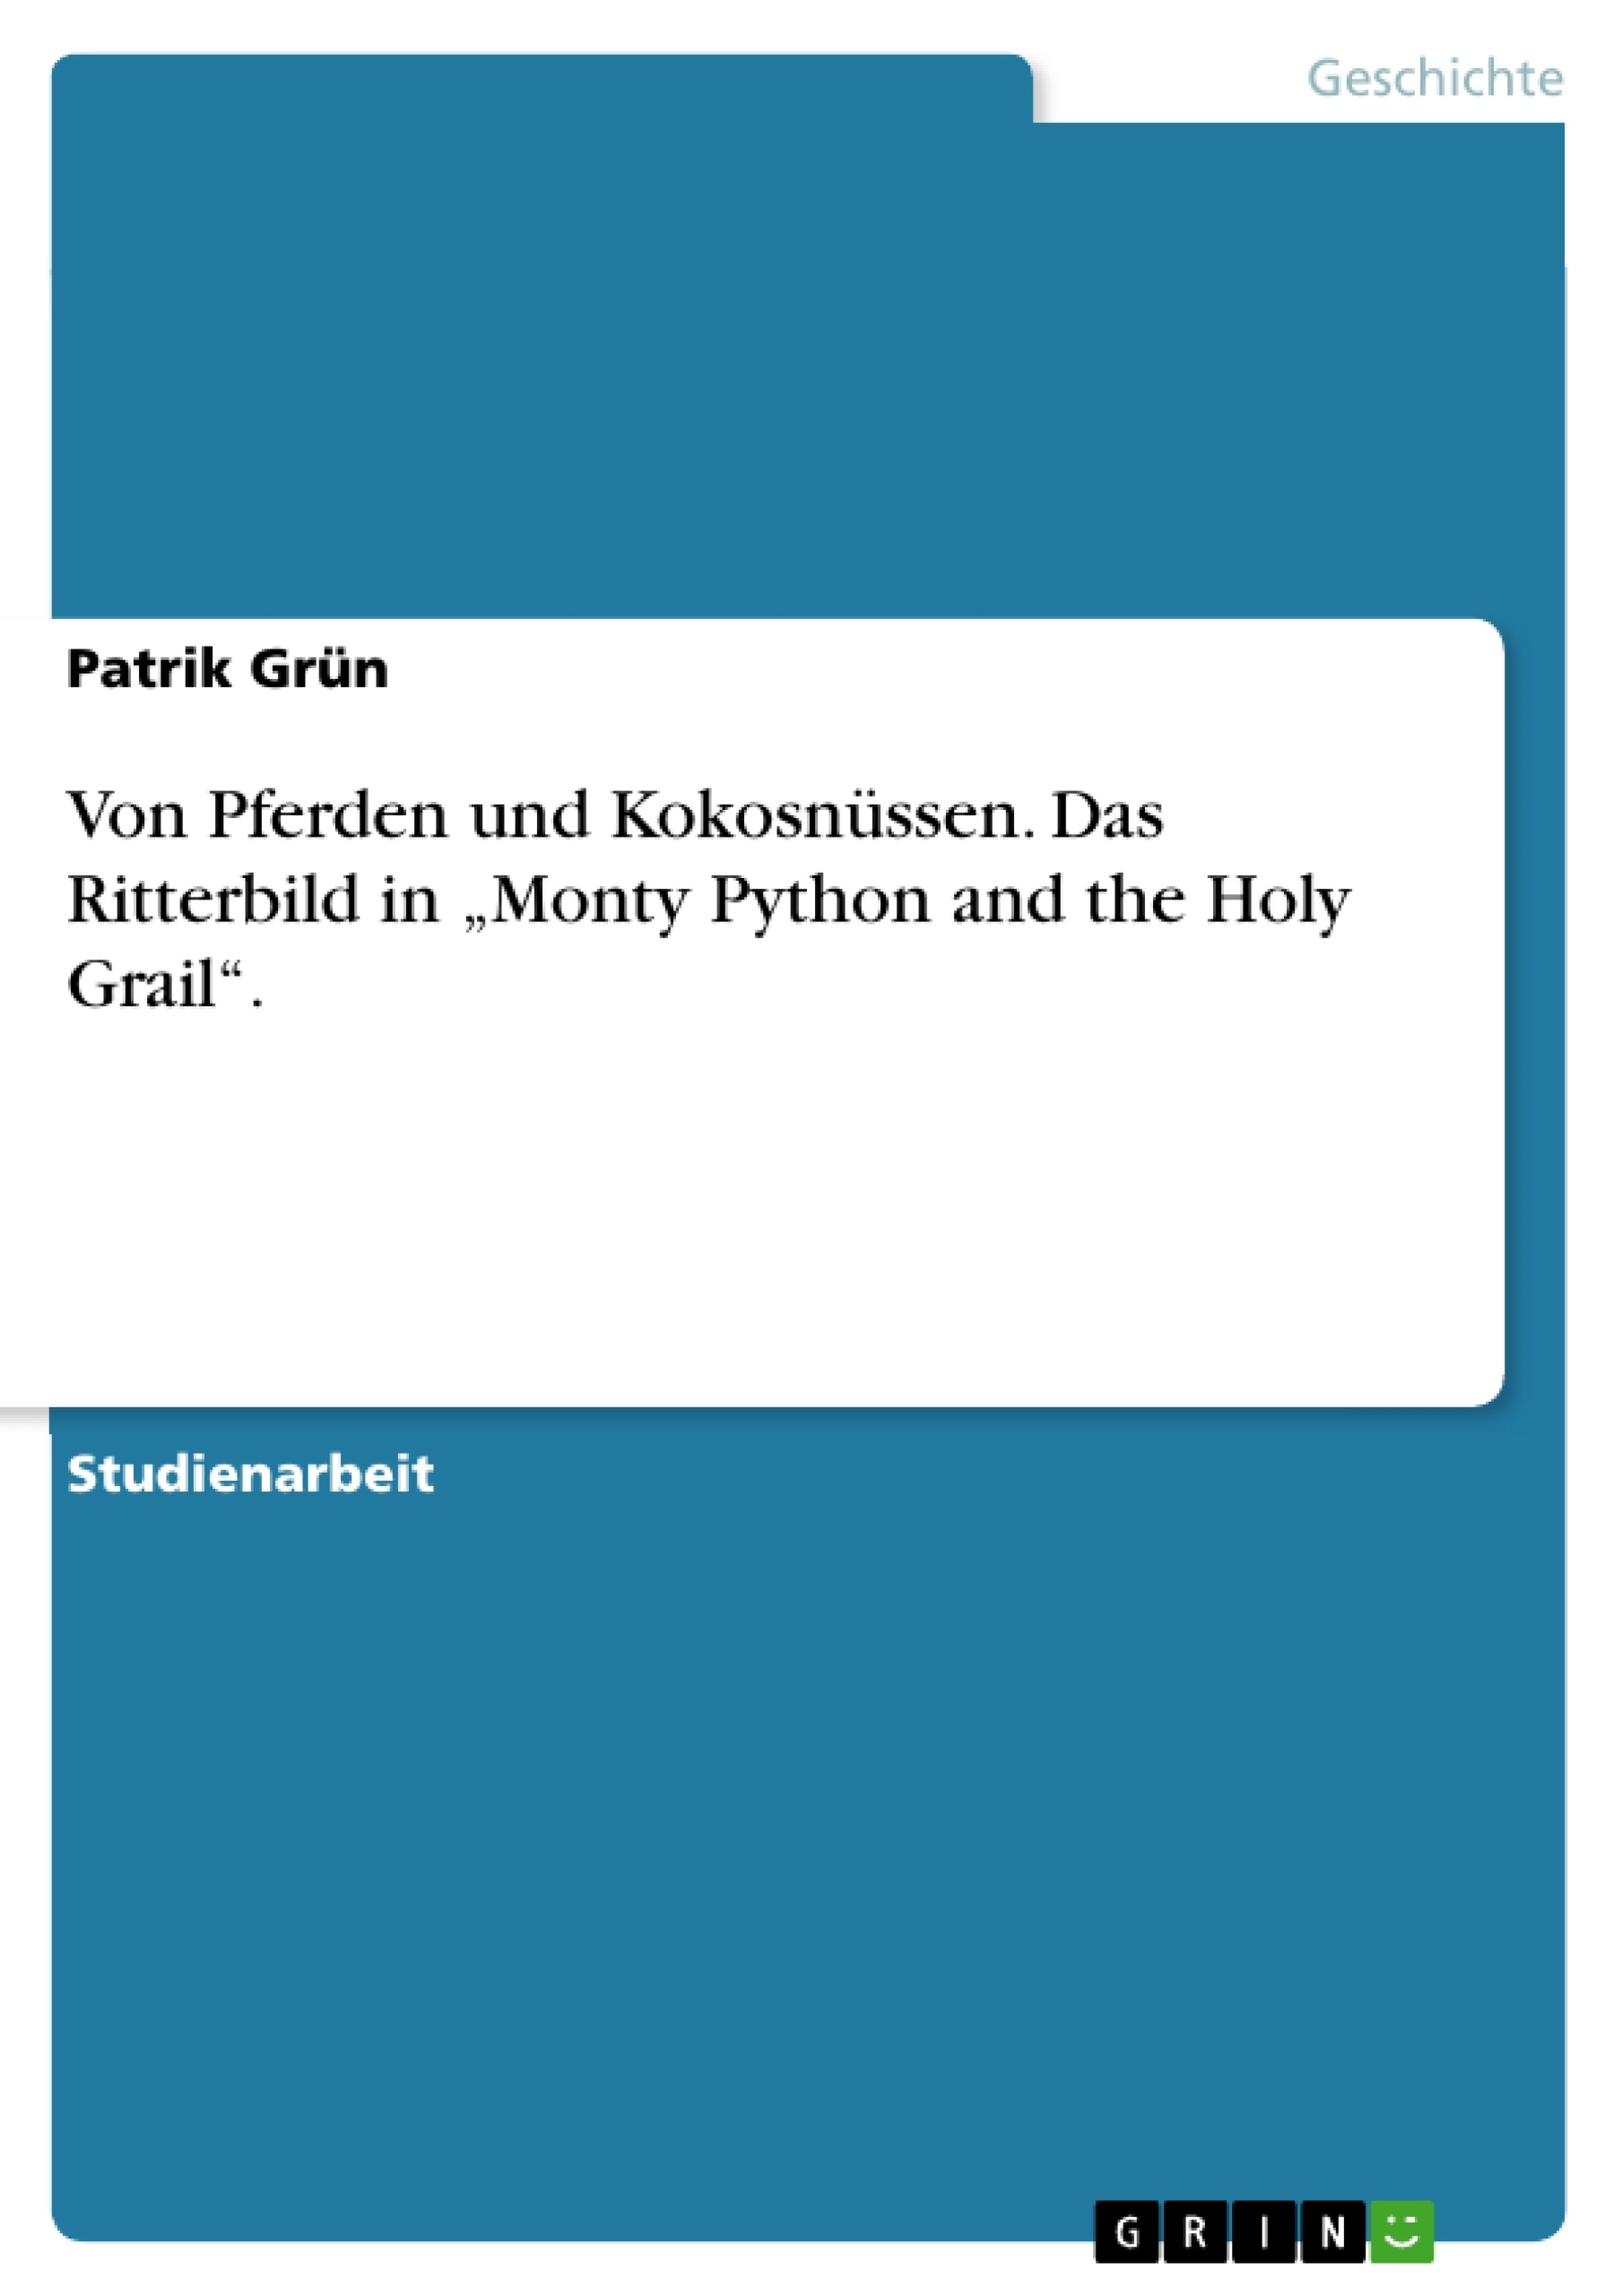 Título: Von Pferden und Kokosnüssen. Das Ritterbild in „Monty Python and the Holy Grail“.